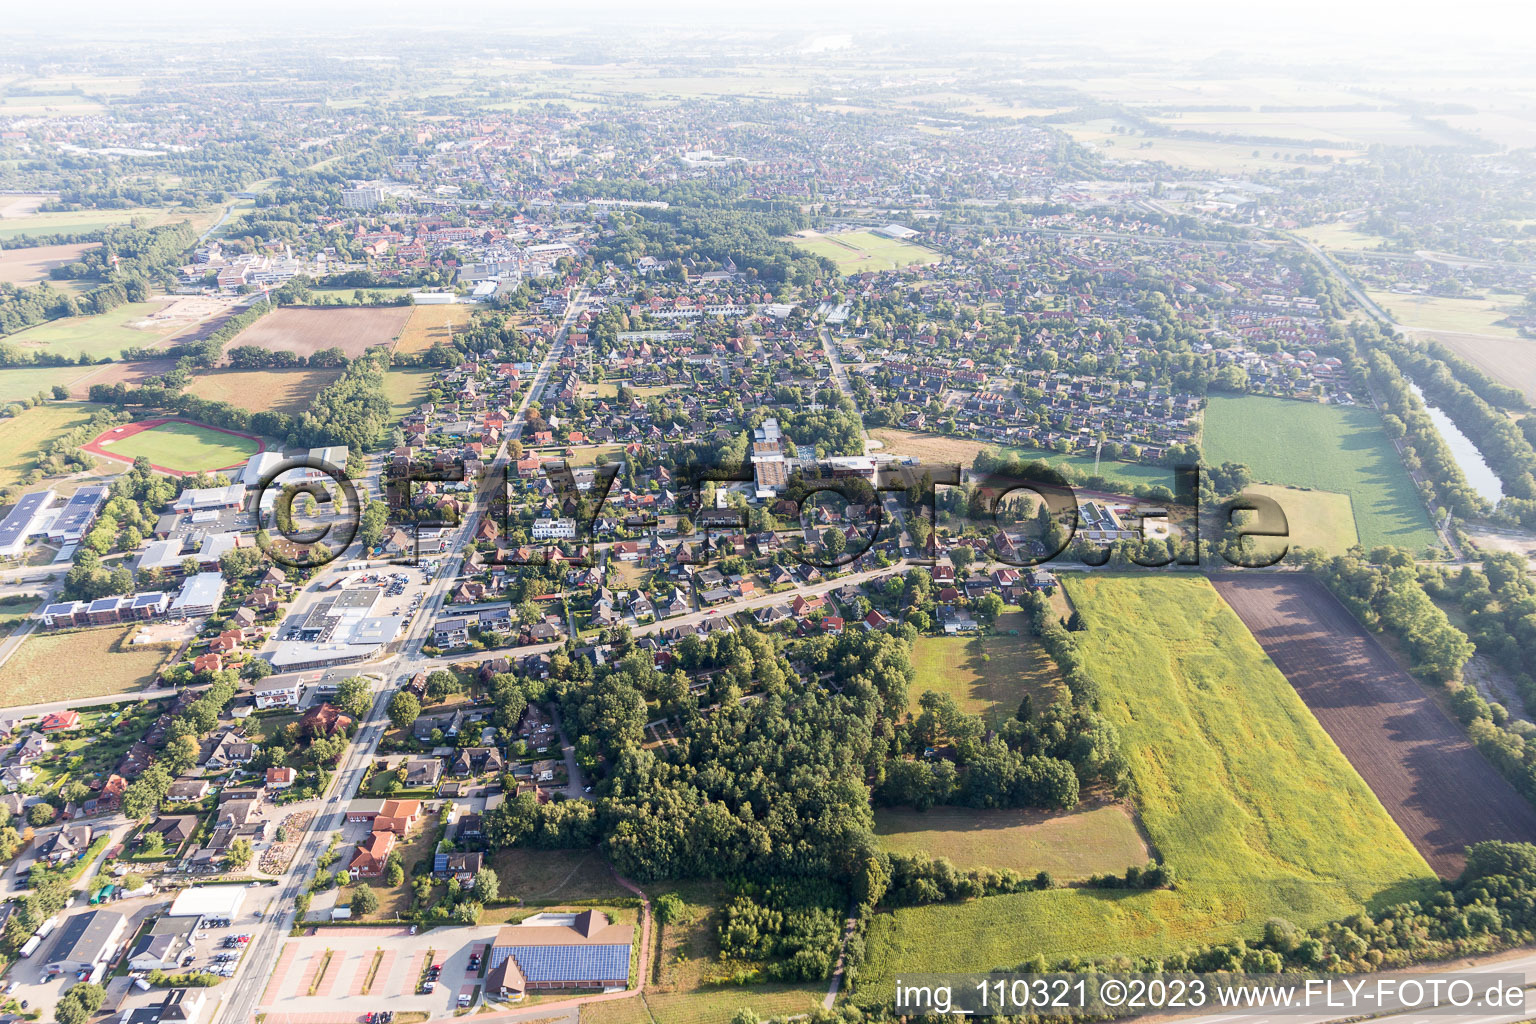 Vue aérienne de Luhdorf dans le département Basse-Saxe, Allemagne